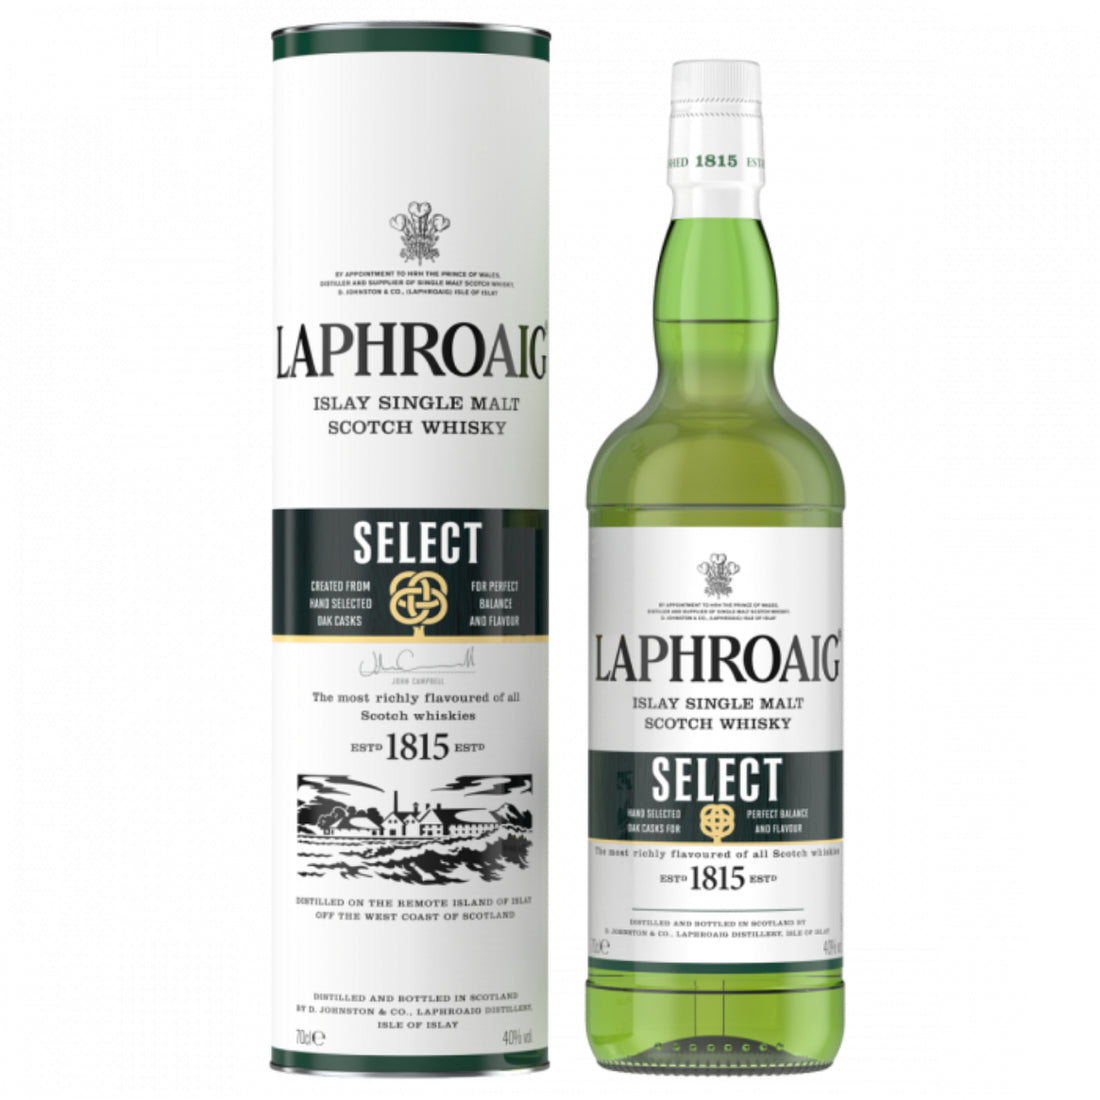 Laphroaig Select Single Malt Scotch caskexplorers Whisky –